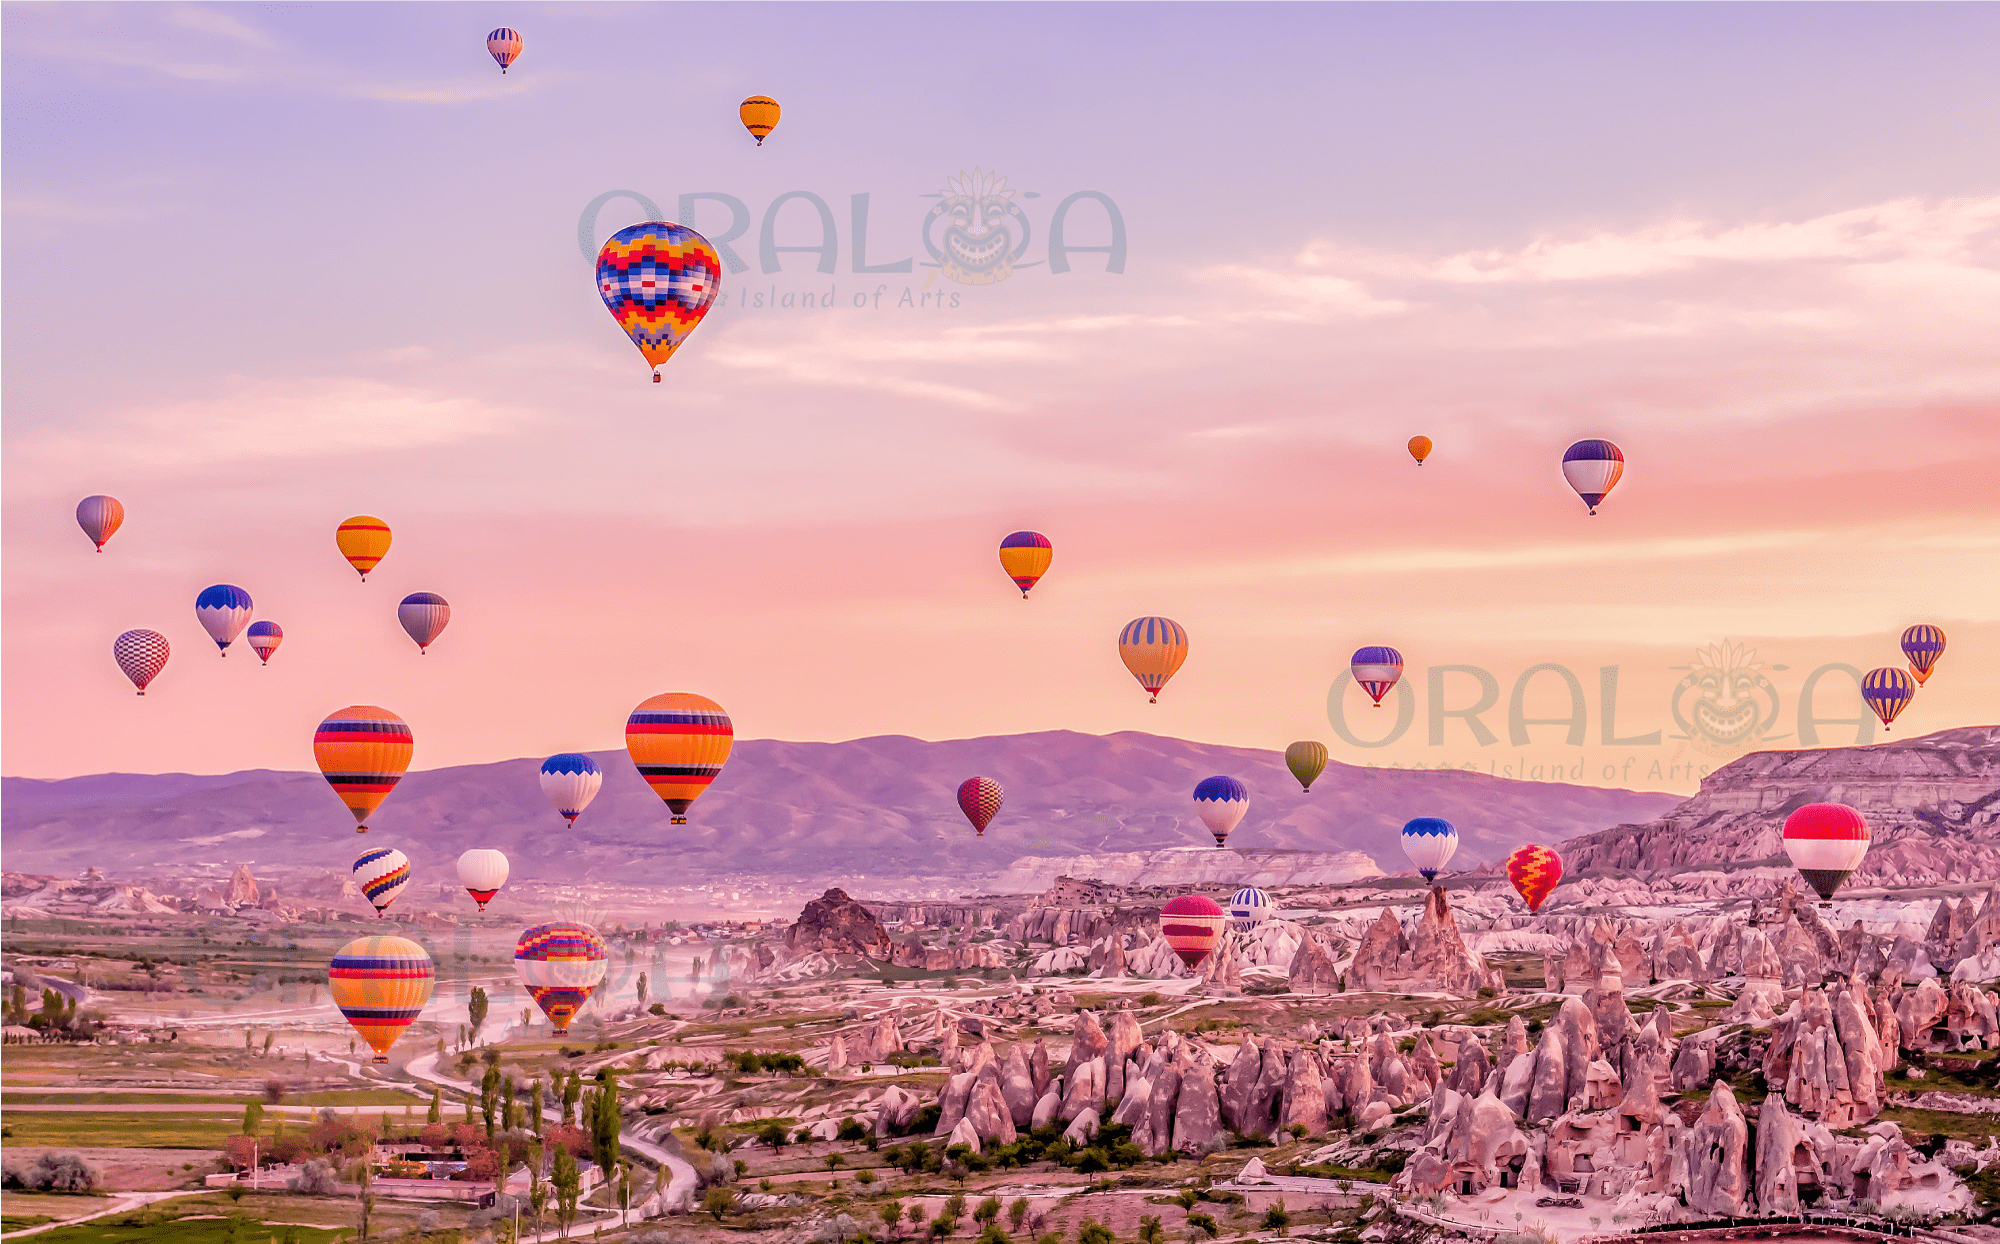 Air Balloons - Oraloa